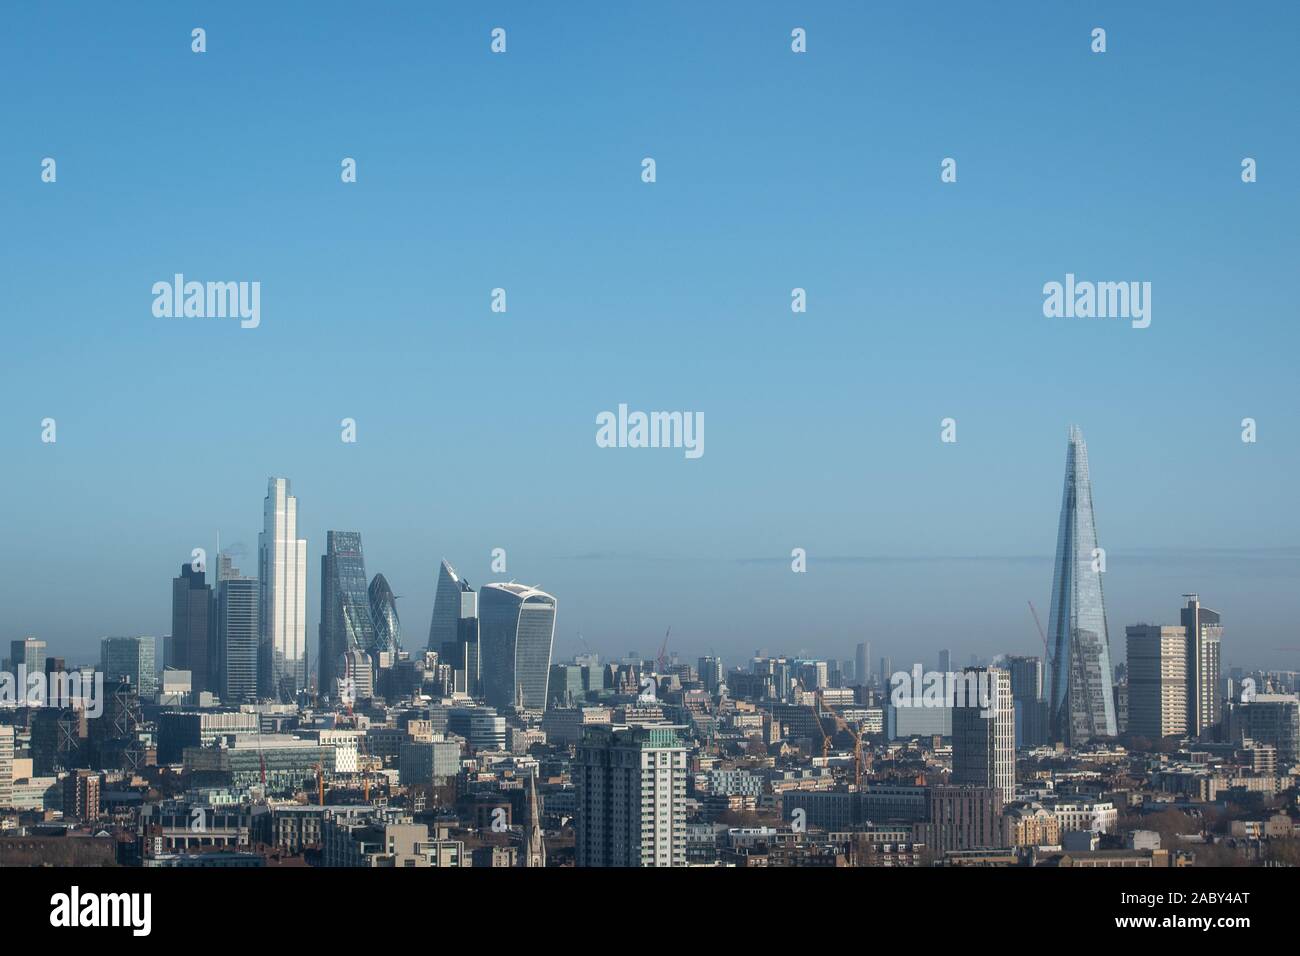 Vista generale della skyline di Londra, come si vede dal Millbank Tower: mostra da destra a sinistra: il coccio (estrema destra), il walkie talkie (20 Fenchurch Street) (destra), il bisturi (52 Lime Street), il Gherkin (30 St Mary Axe), il Cheesegrater (l'edificio Leadenhall), ventidue torre (22 Bishopsgate) e 100 Bishopsgate del distretto finanziario. Foto Stock